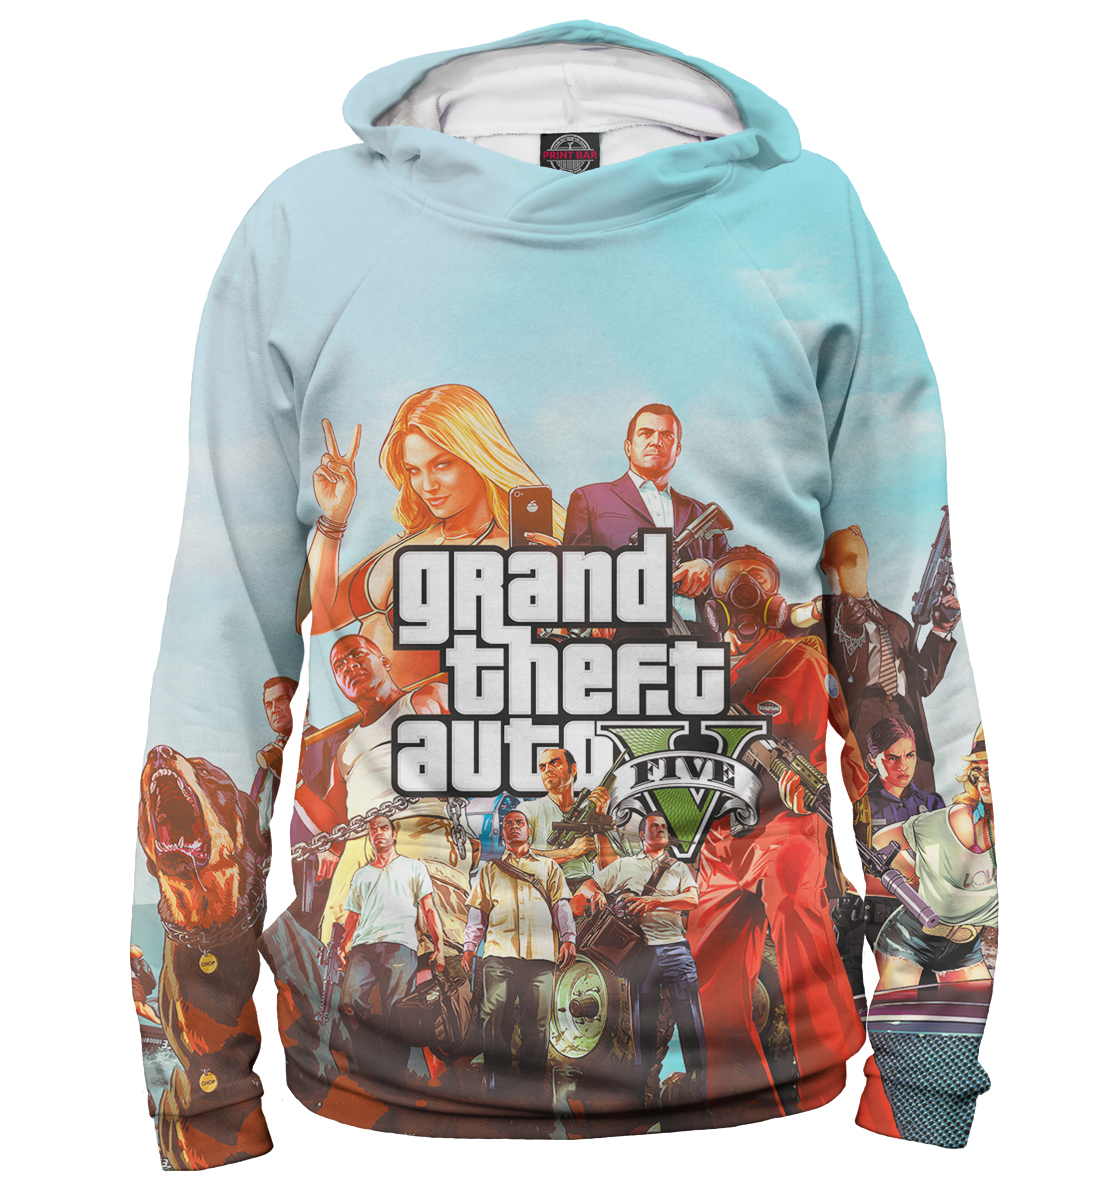 Мужской Худи с принтом Grand Theft Auto V, артикул ROC-535016-hud-2mp